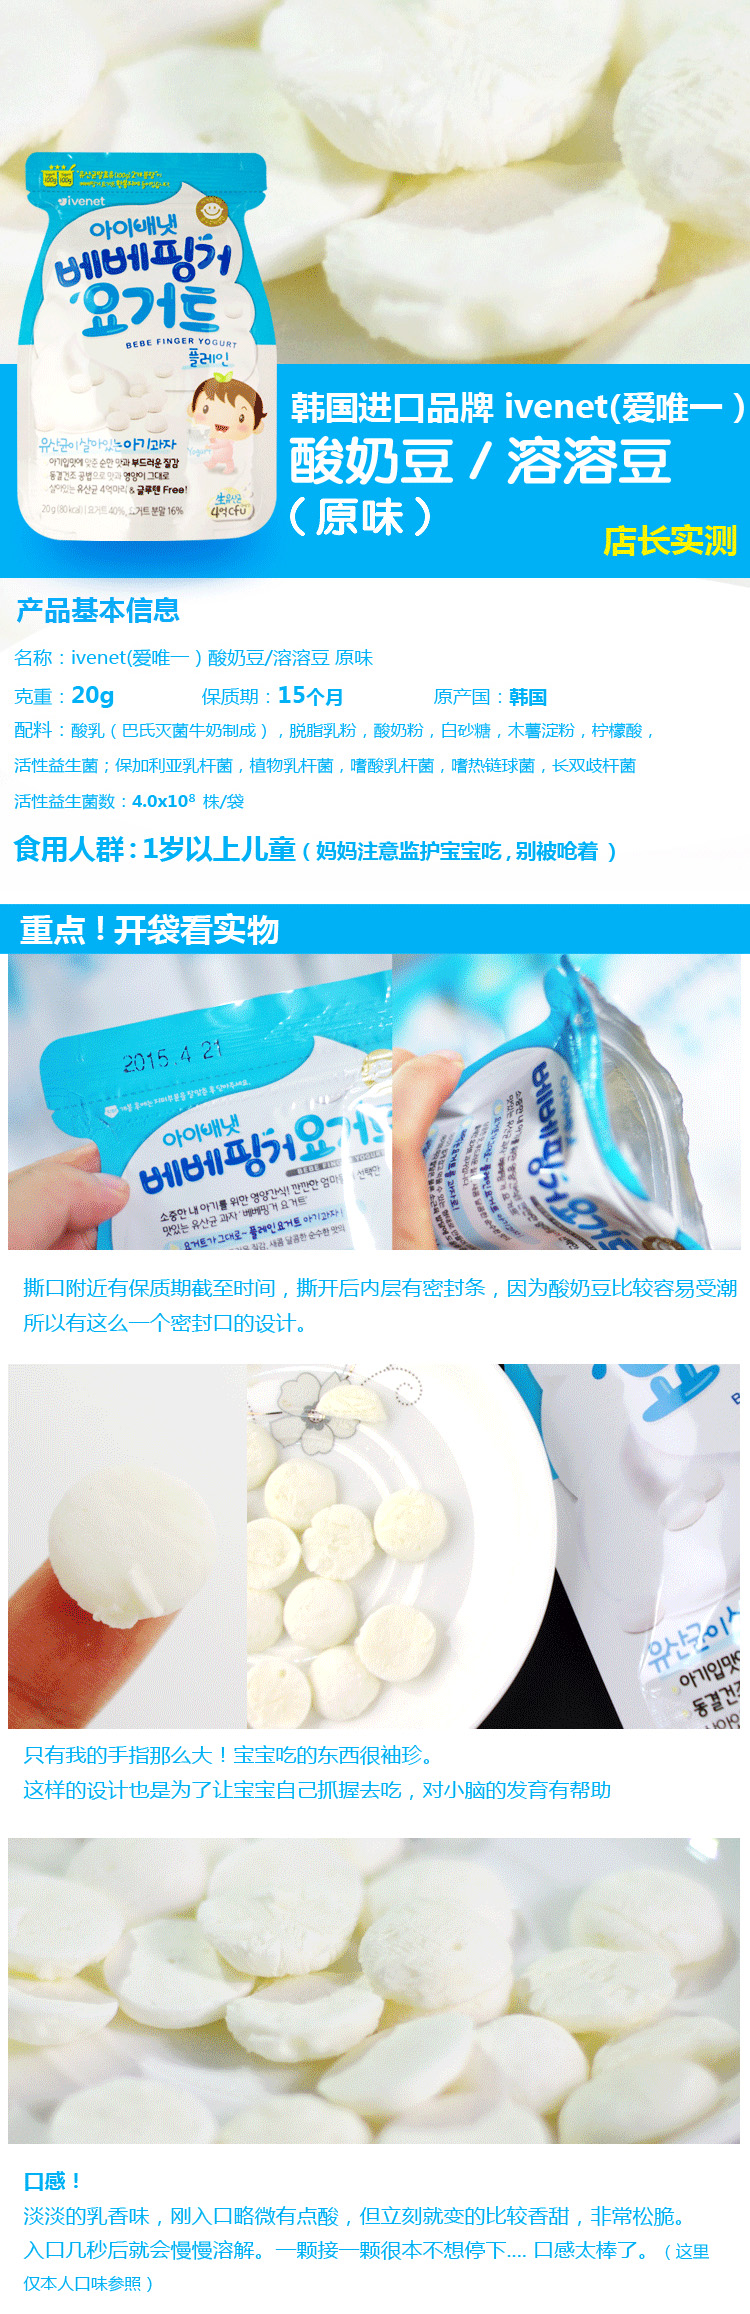 爱唯一ivenet韩国酸奶溶溶豆（原味）,产品编号39308